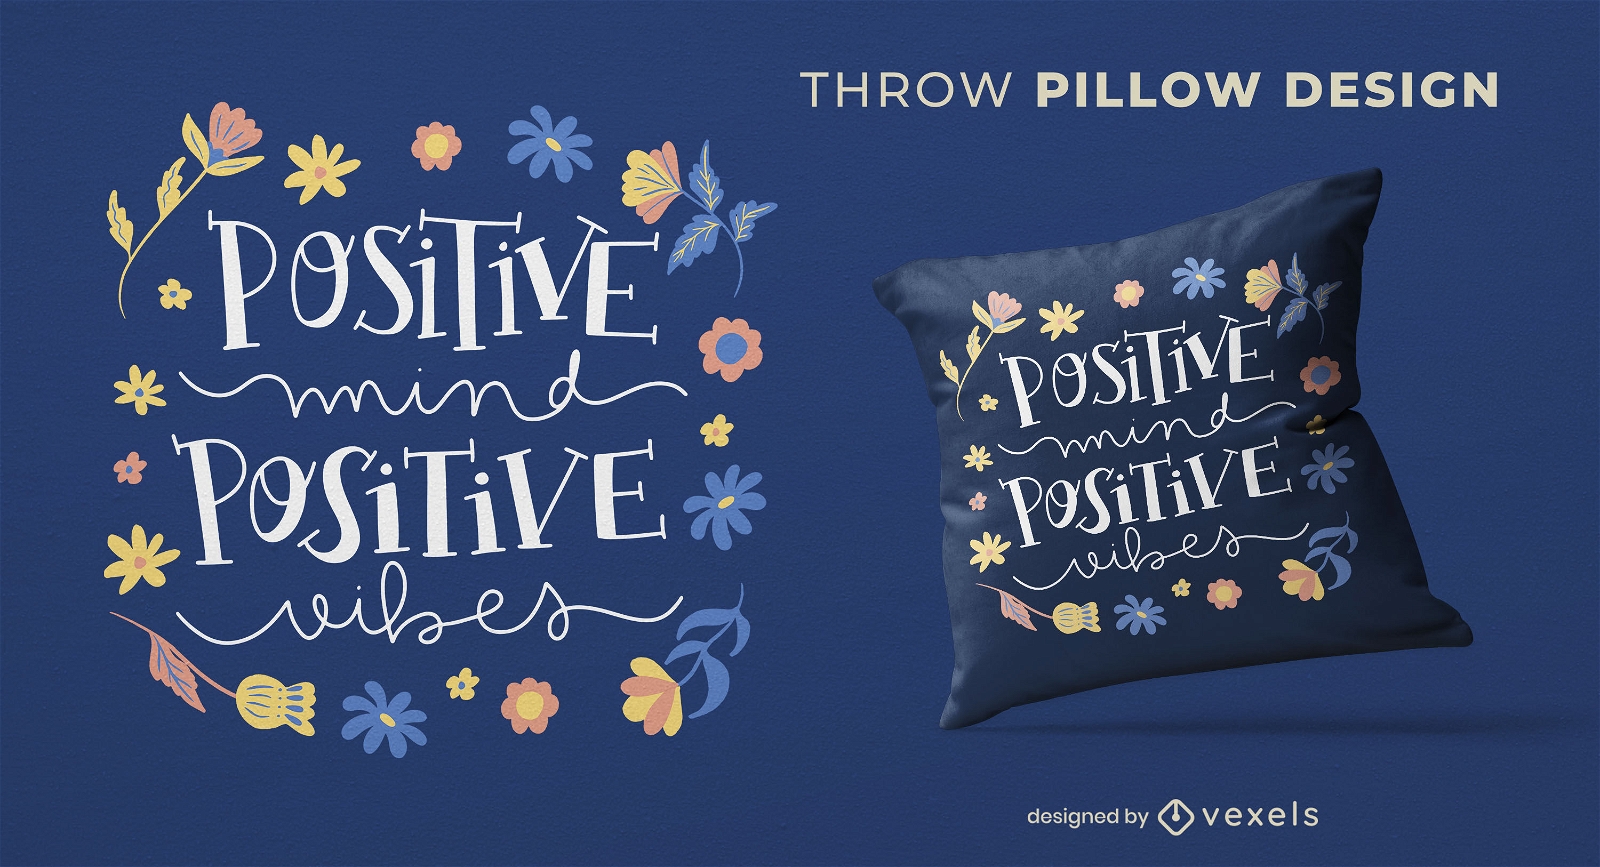 Positive mind throw pillow design